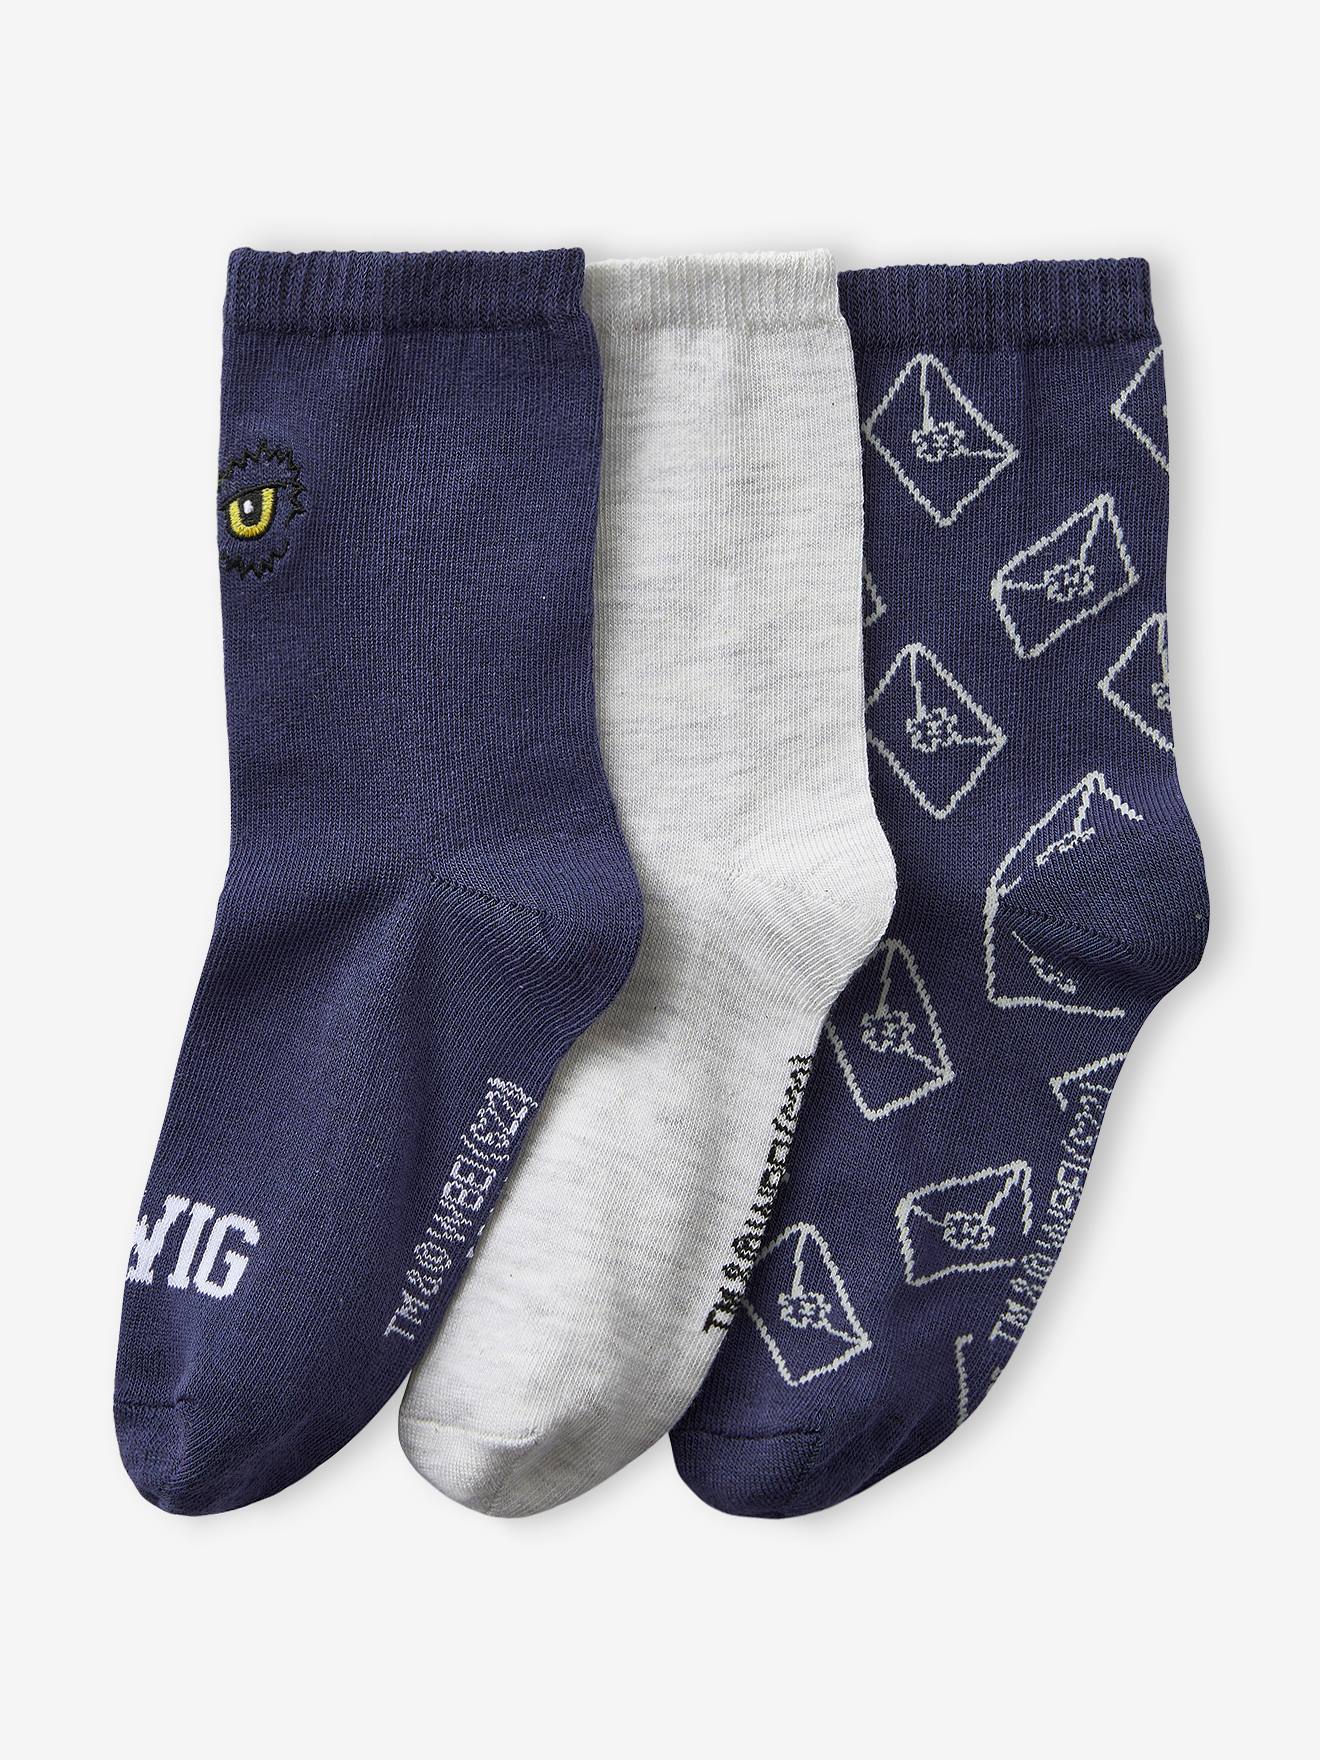 Set van 3 paar Harry Potter® sokken gechineerd grijs/blauw